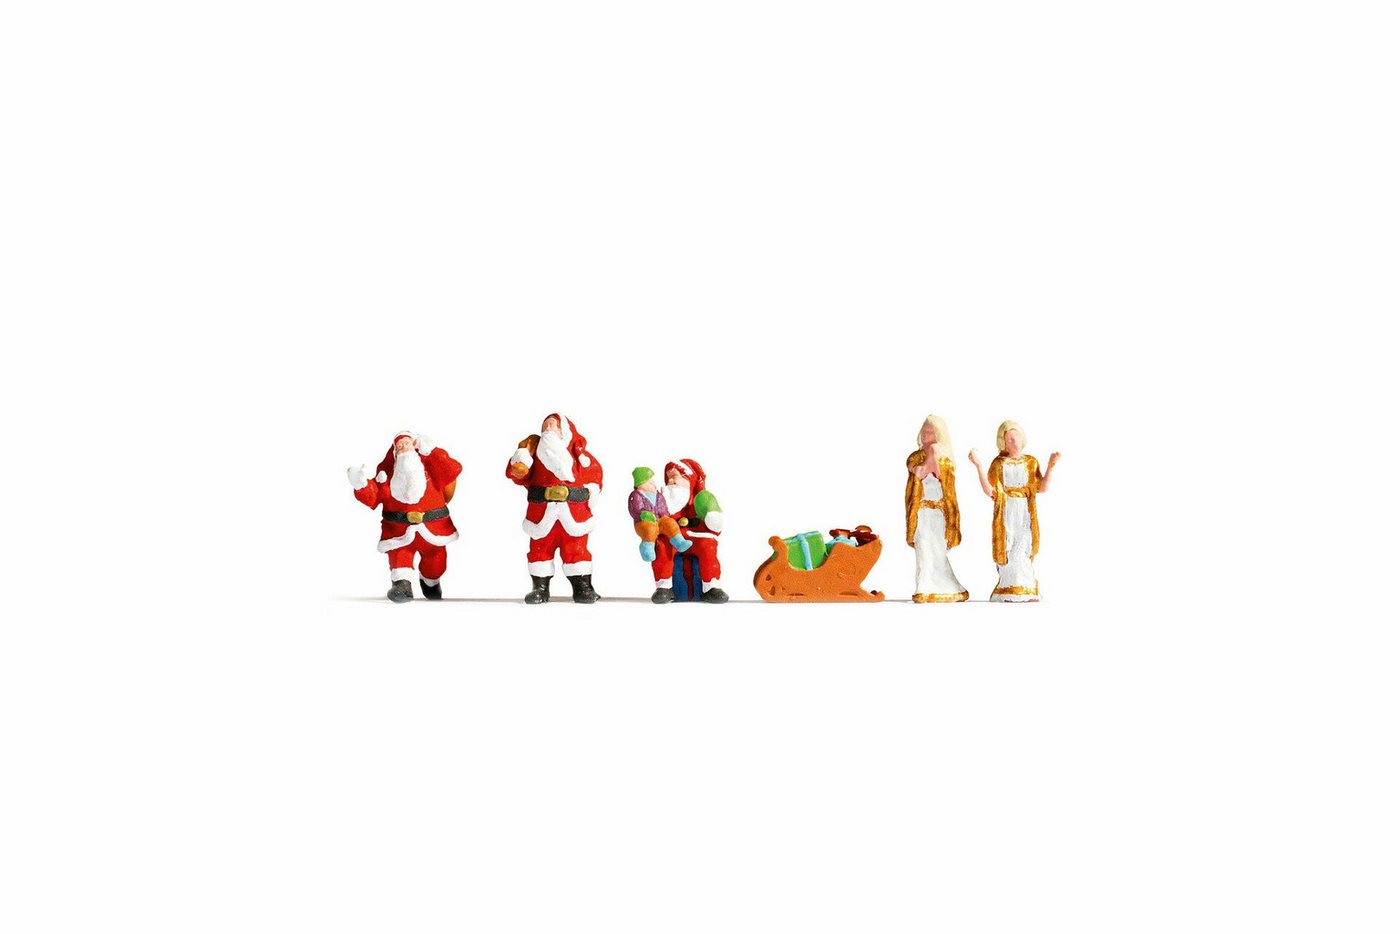 NOCH Weihnachtsfigur NOCH, 15920, Spur H0, Weihnachtsfiguren, Figur von NOCH